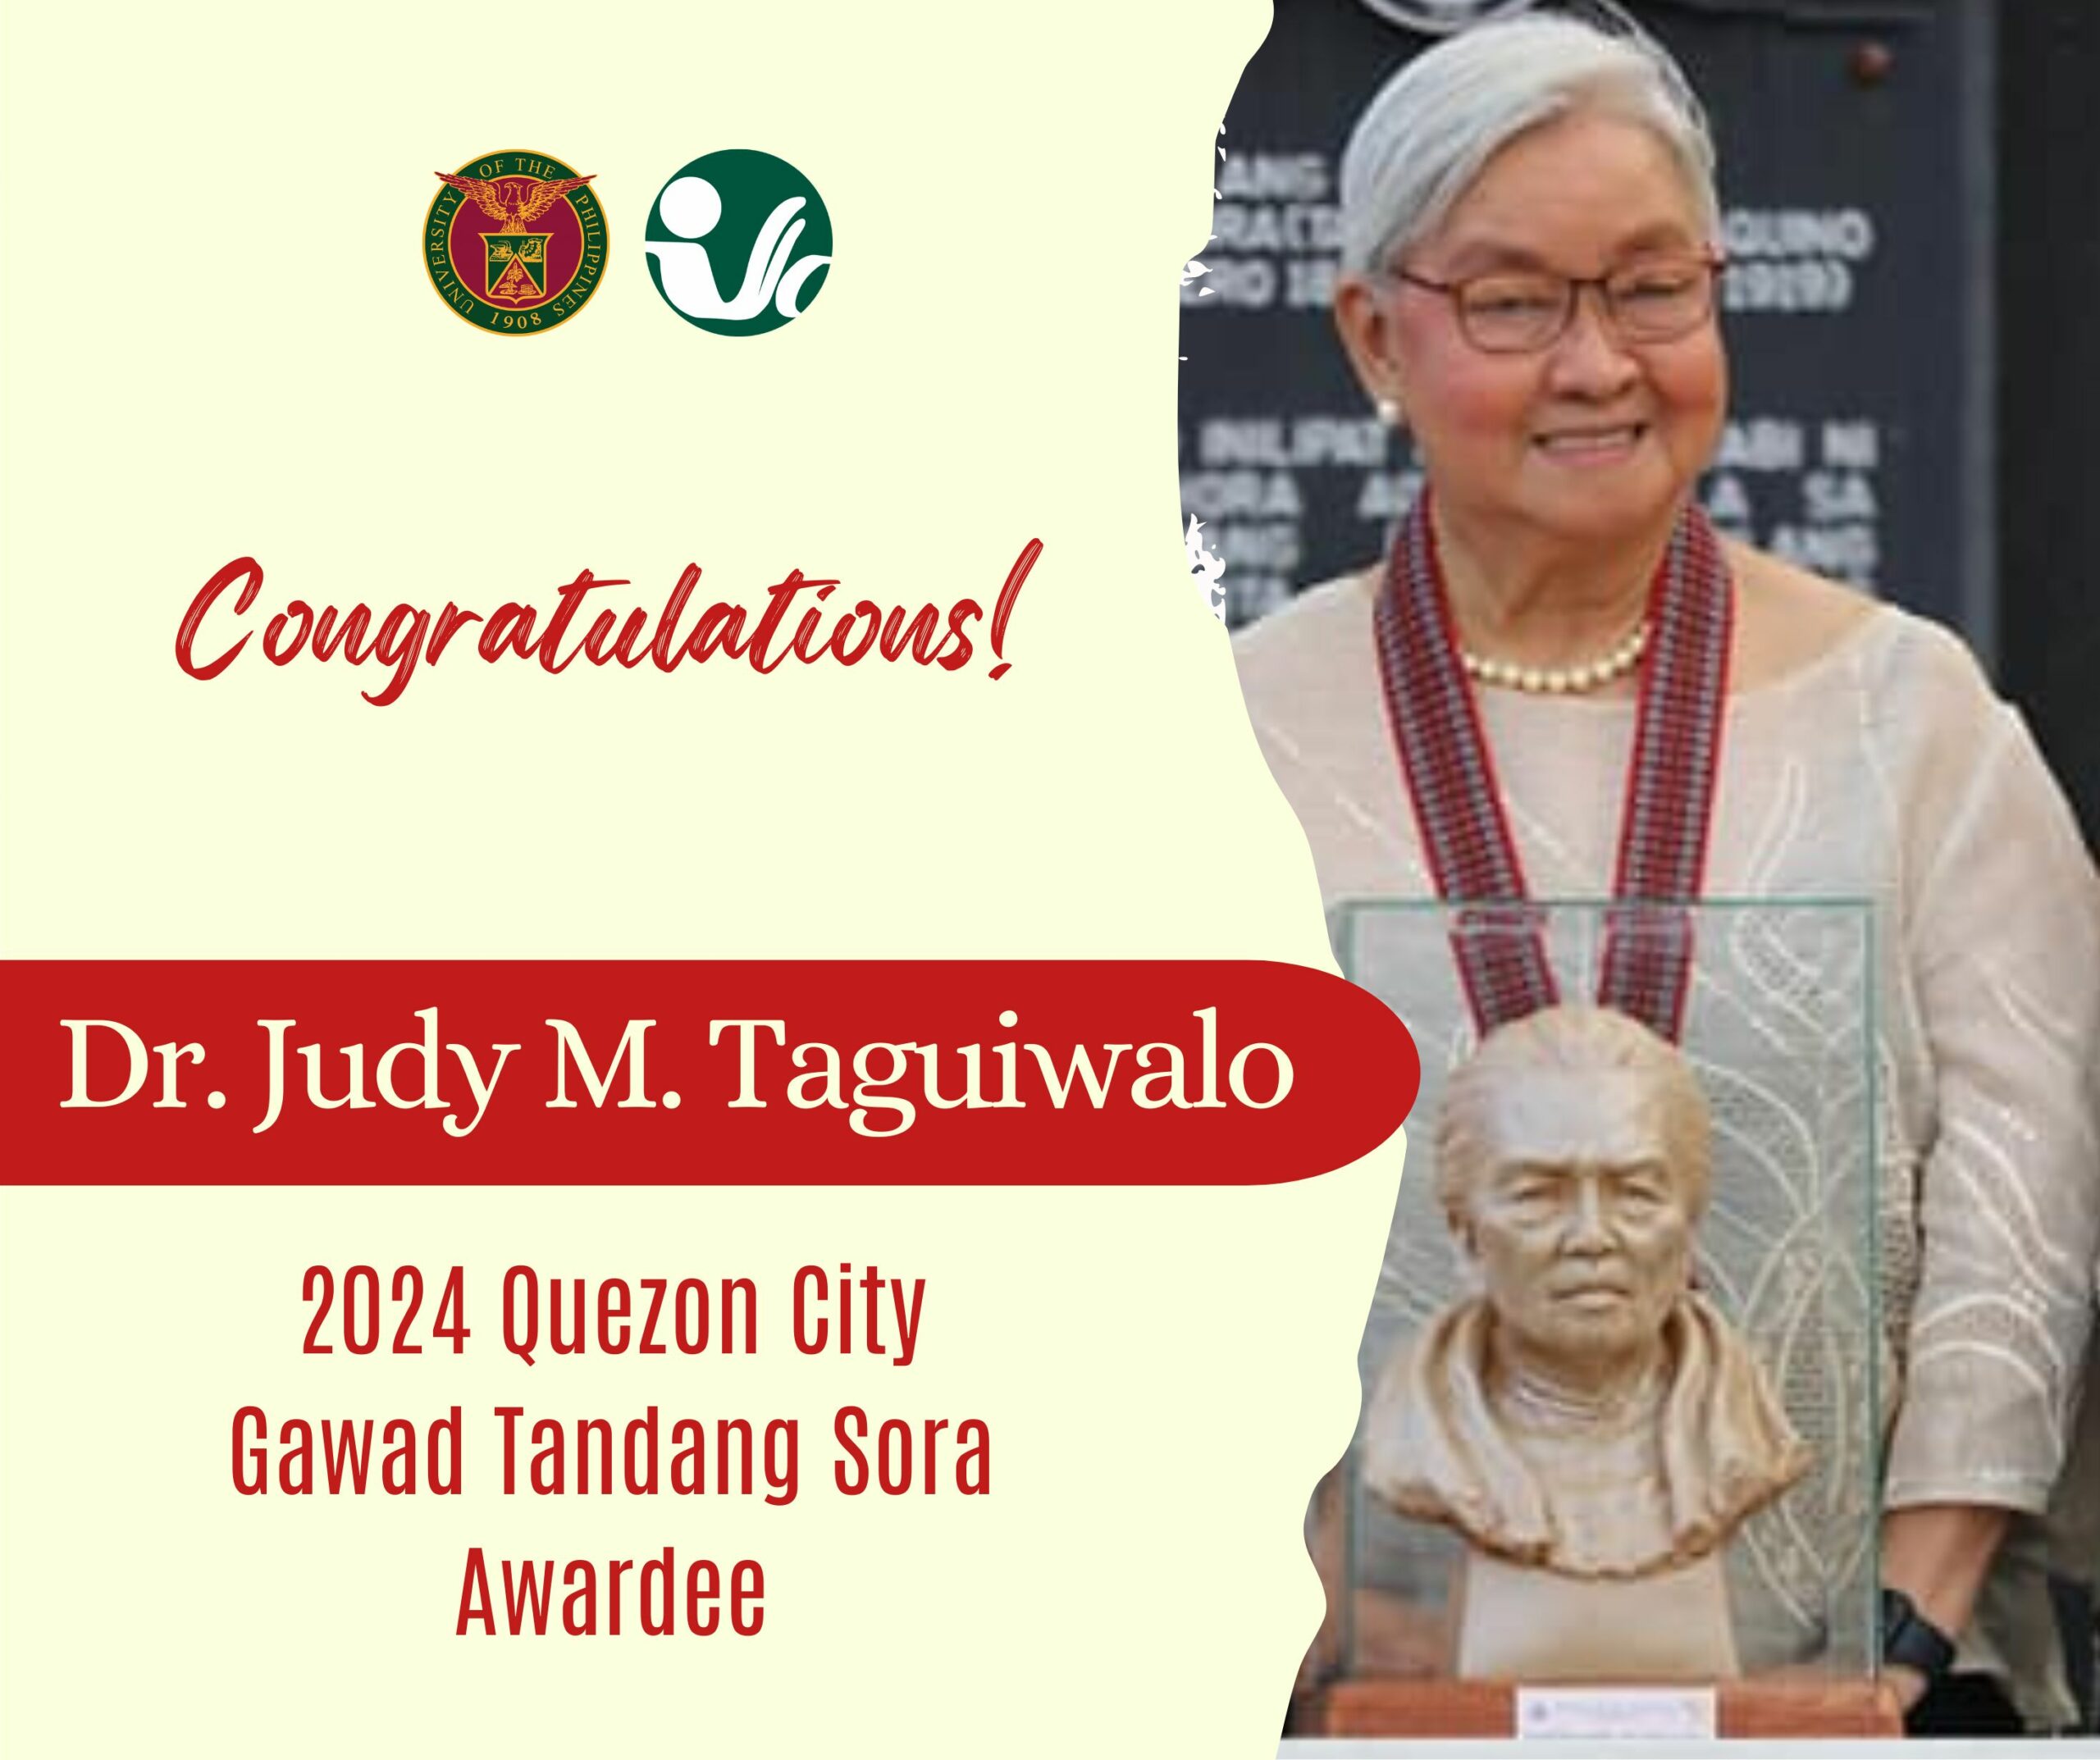 Pagbati kay Dr. Judy M. Taguiwalo sa Pagtanggap ng 2024 Quezon City Gawad Tandang Sora